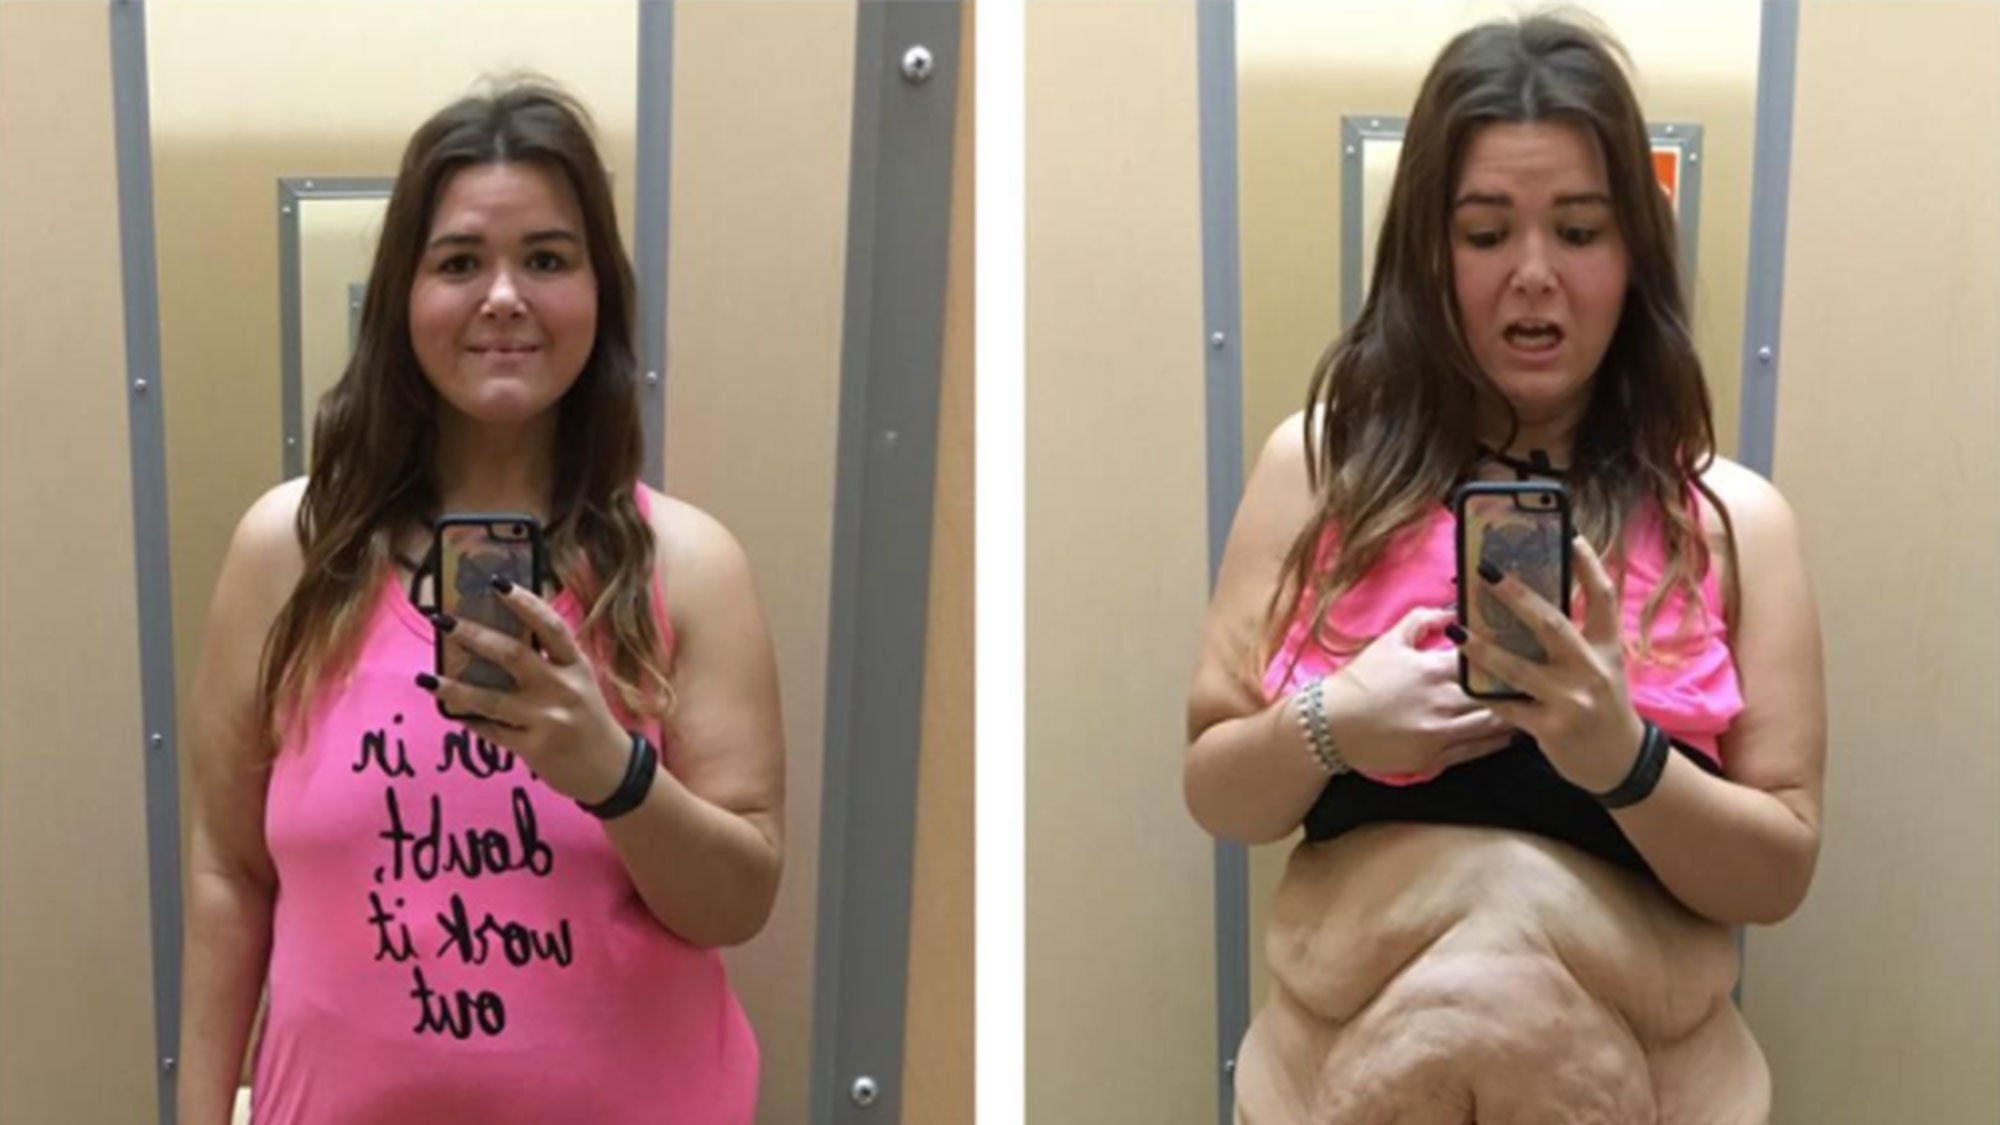 Джессика Вебер сбросившая 90 кг делится фото историей похудения и проблемой излишков кожи | Glamour